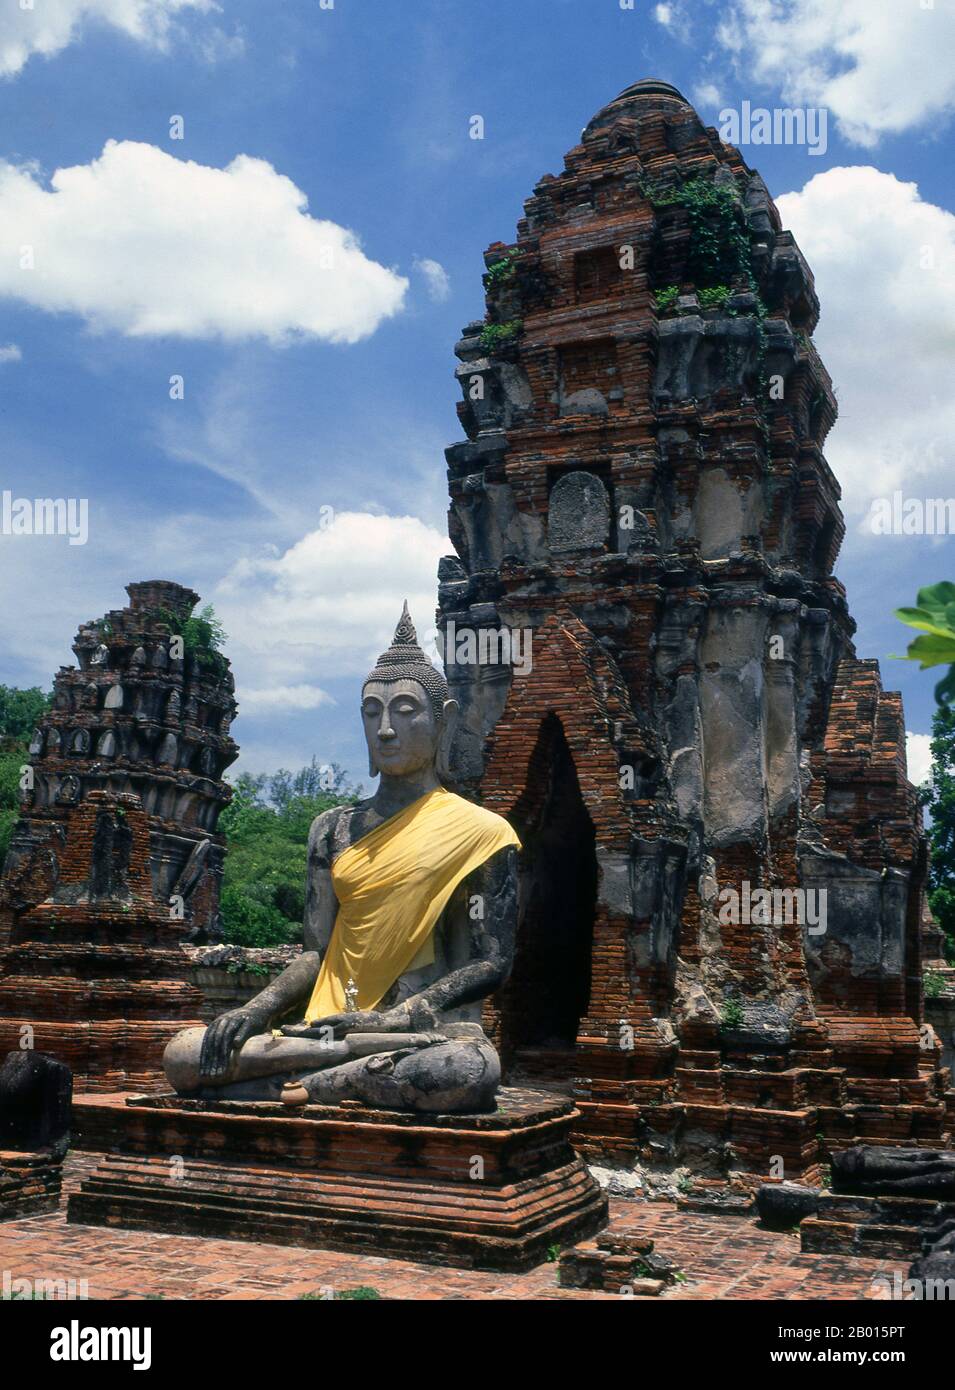 Thailandia: Prang e Buddha in stile Khmer, Wat Phra Mahathat, Ayutthaya Historical Park. Wat Phra Mahathat fu costruito durante il regno di Borommaracha i (Boromma Rachathirat i) o Khun Luang Pa Ngua (1370-1388), che era il terzo re del regno di Ayutthaya. Ayutthaya (Ayudhya) era un regno siamese che esisteva dal 1351 al 1767. Ayutthaya era amichevole verso i commercianti stranieri, compreso il cinese, vietnamita (Annamese), indiani, giapponesi e persiani, E poi i portoghesi, spagnoli, olandesi e francesi, permettendo loro di creare villaggi fuori dalle mura della città. Foto Stock